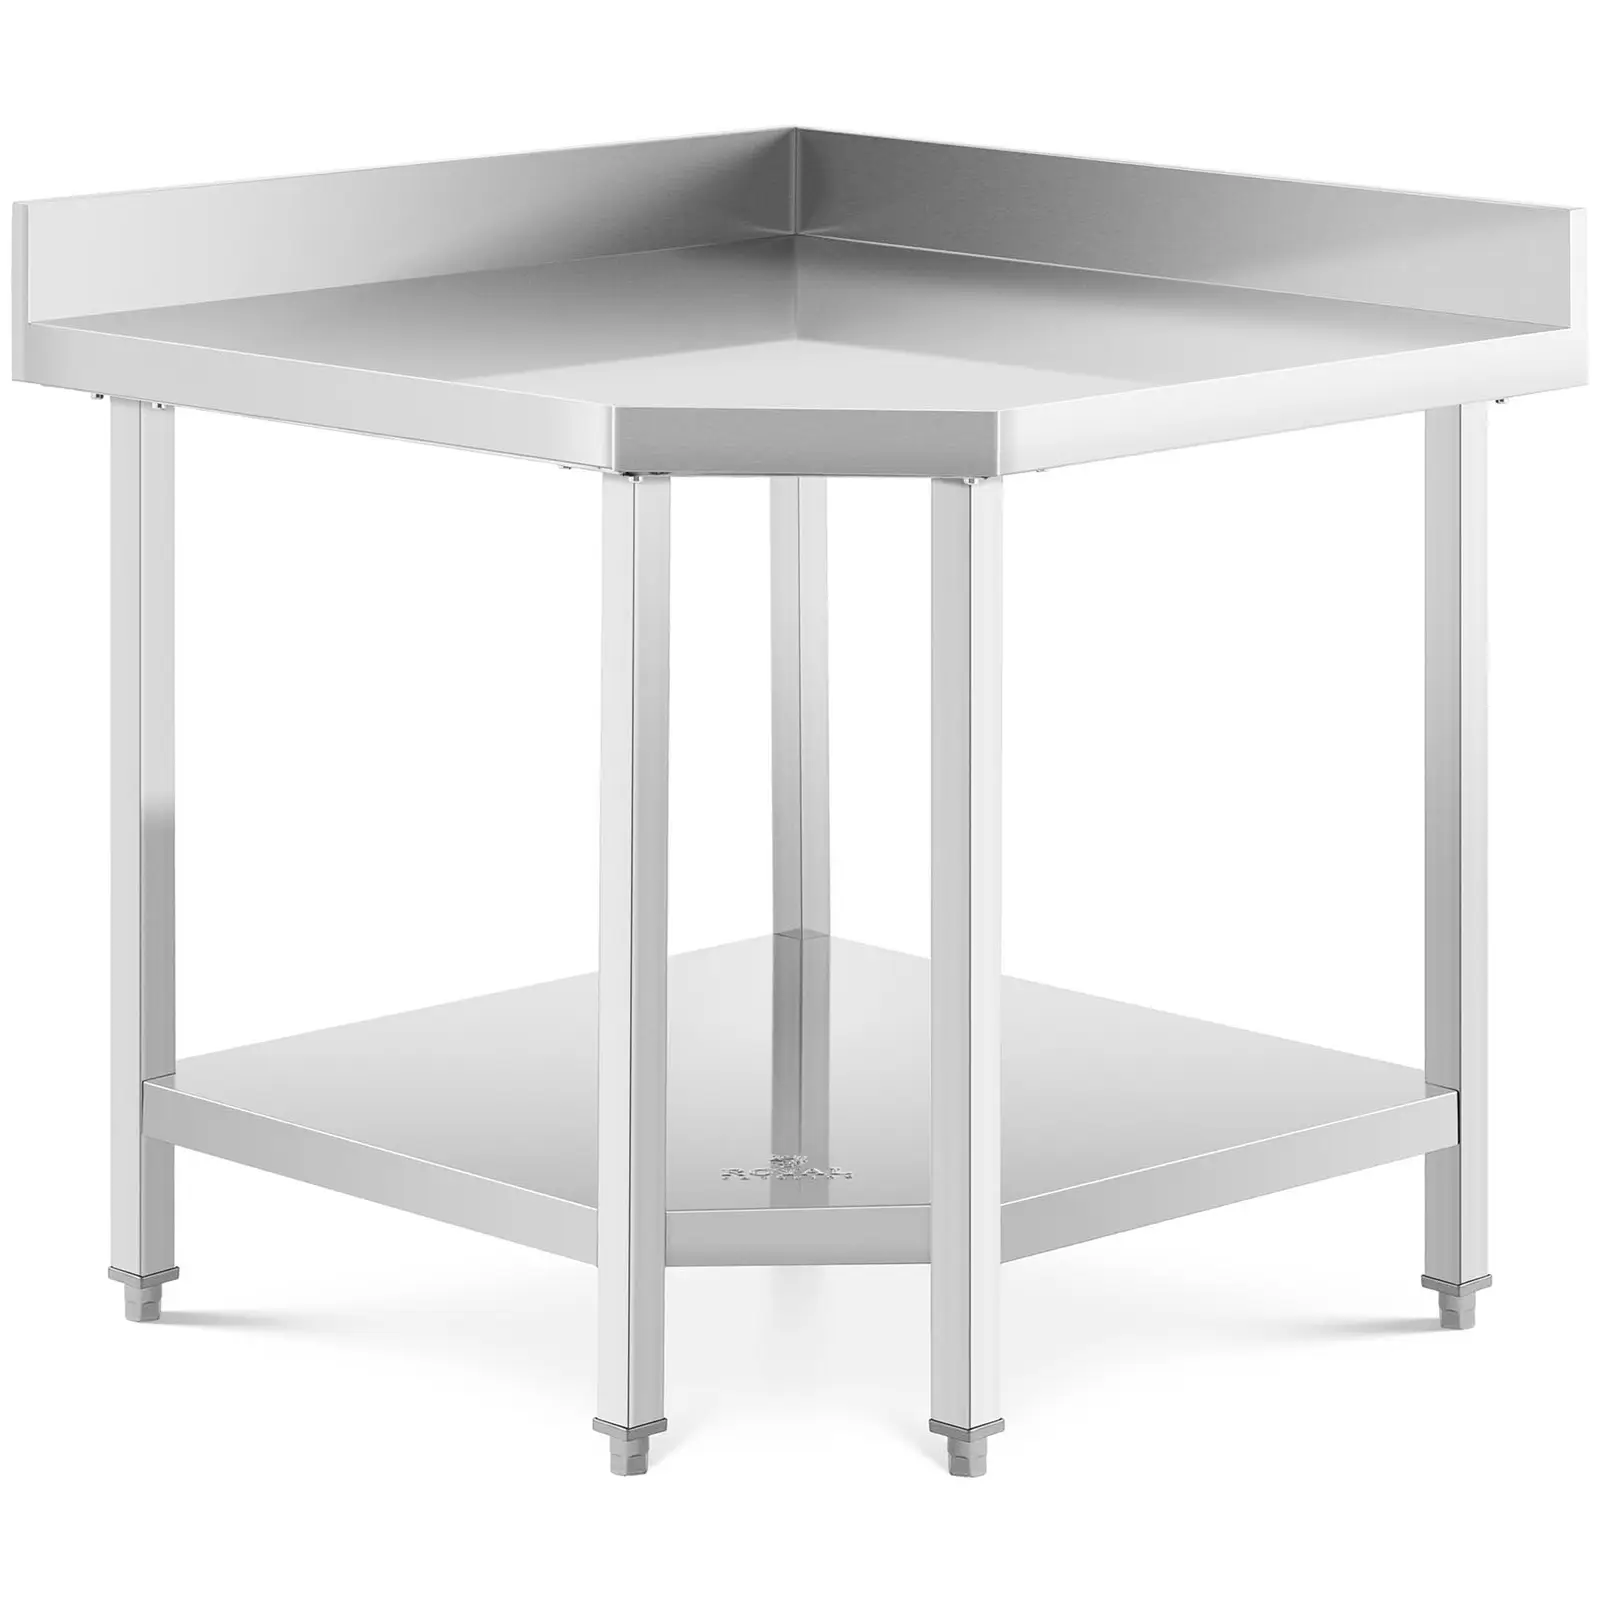 Table de travail en angle inox - 90 x 70 cm - Capacité de 300 kg